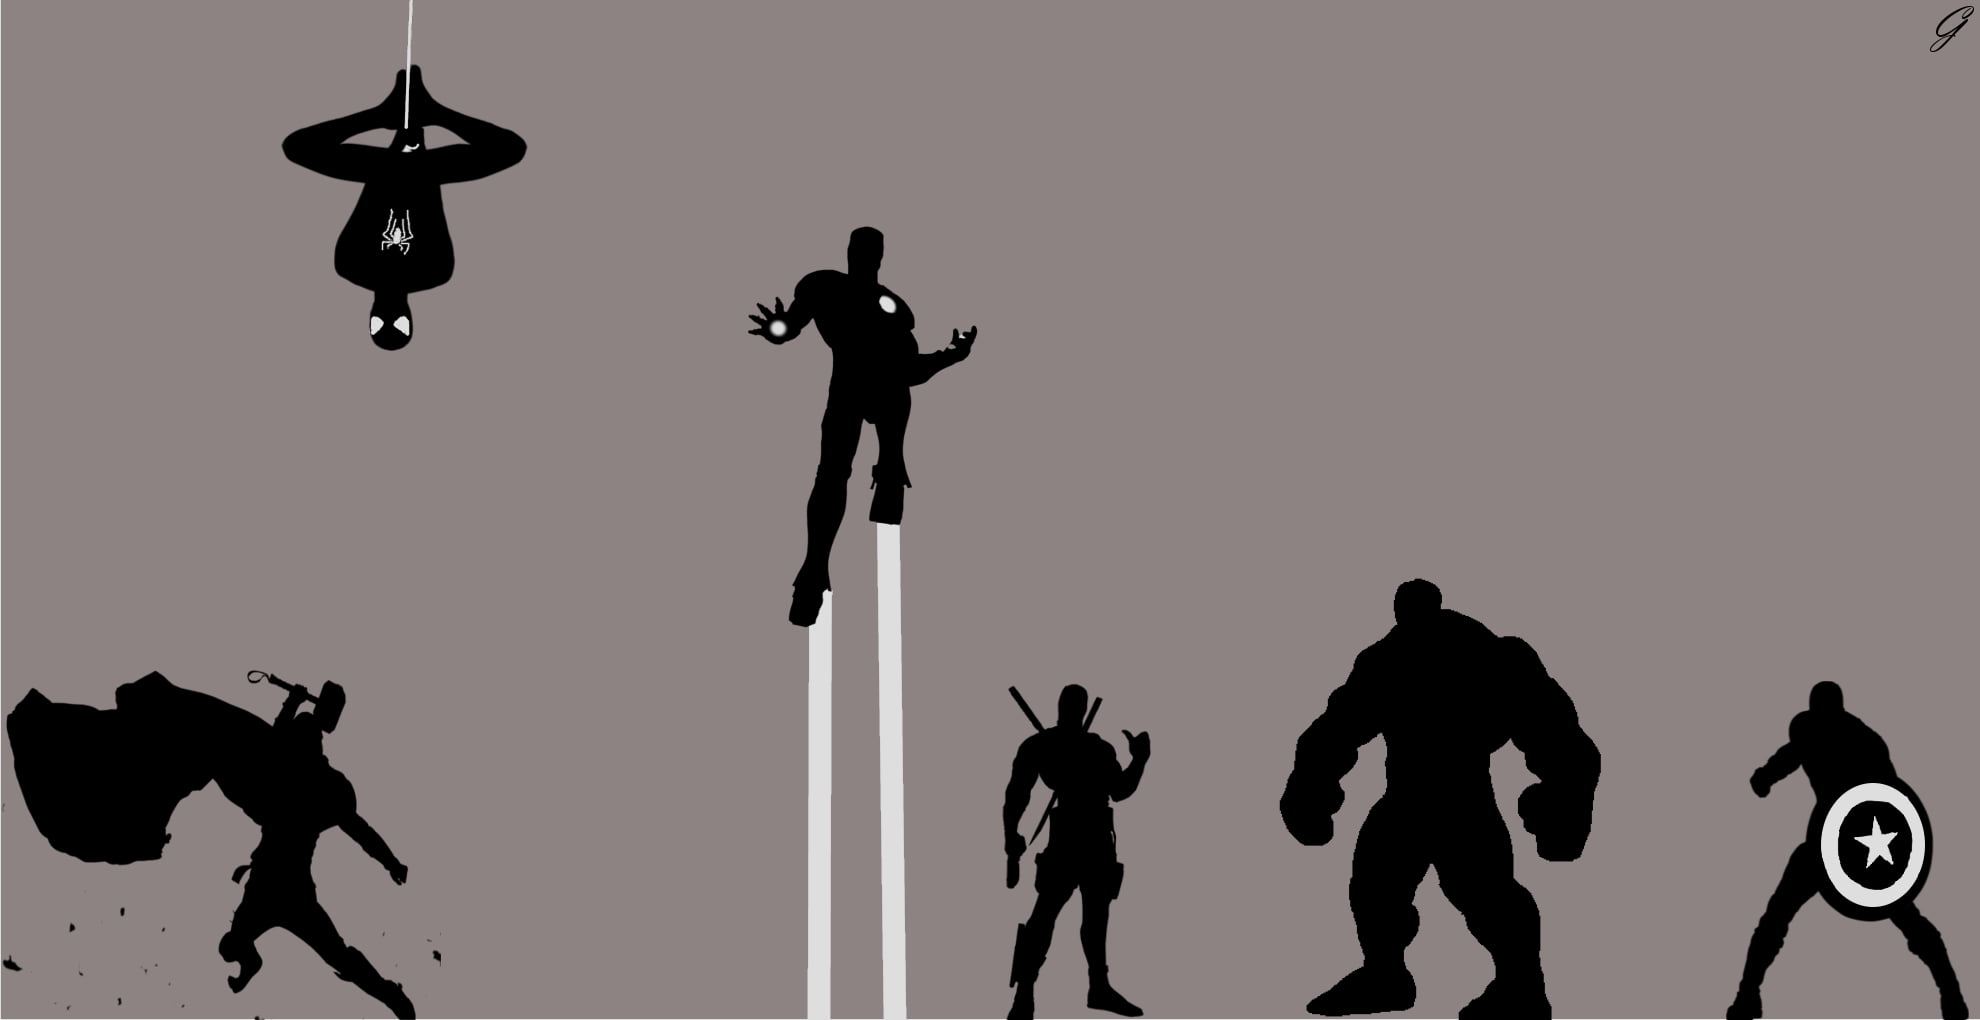 Marvel Avengers digital wallpaper, Thor 2: The Dark World, Avengers: Age of Ultron, The Avengers, Spider-Man